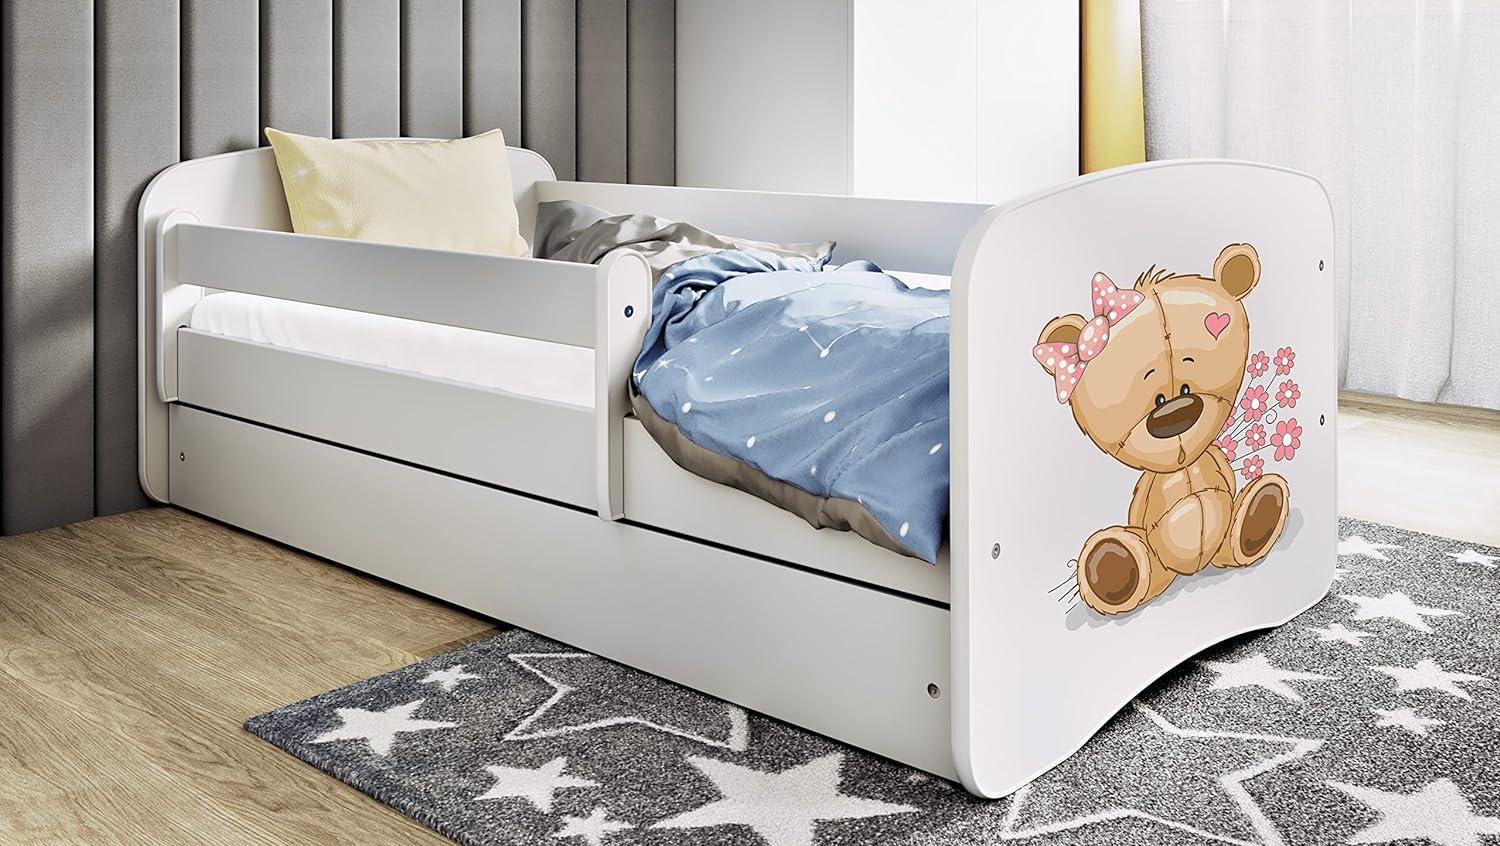 Kocot Kids 'Teddybär mit Blumen' Einzelbett weiß 70x140 cm inkl. Rausfallschutz, Matratze, Schublade und Lattenrost Bild 1